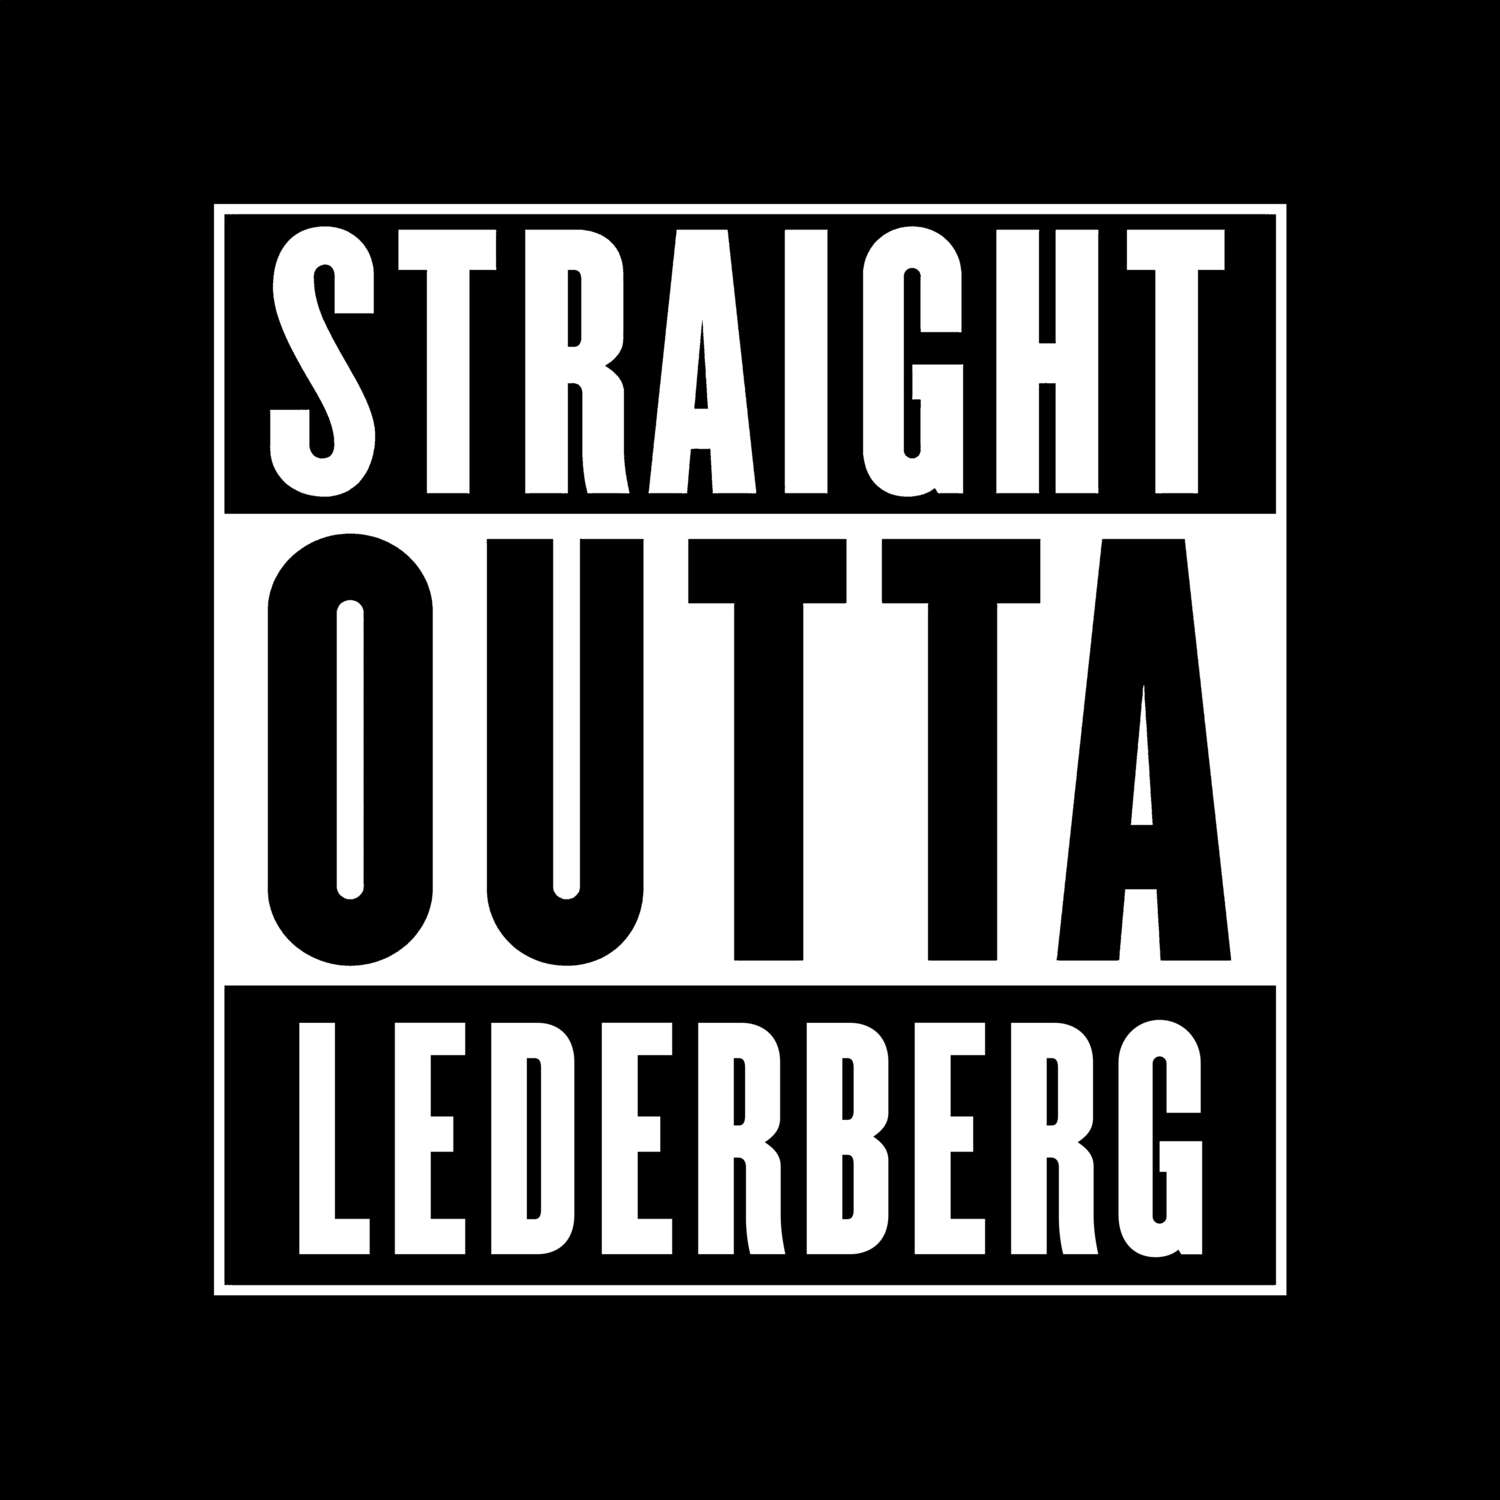 Lederberg T-Shirt »Straight Outta«